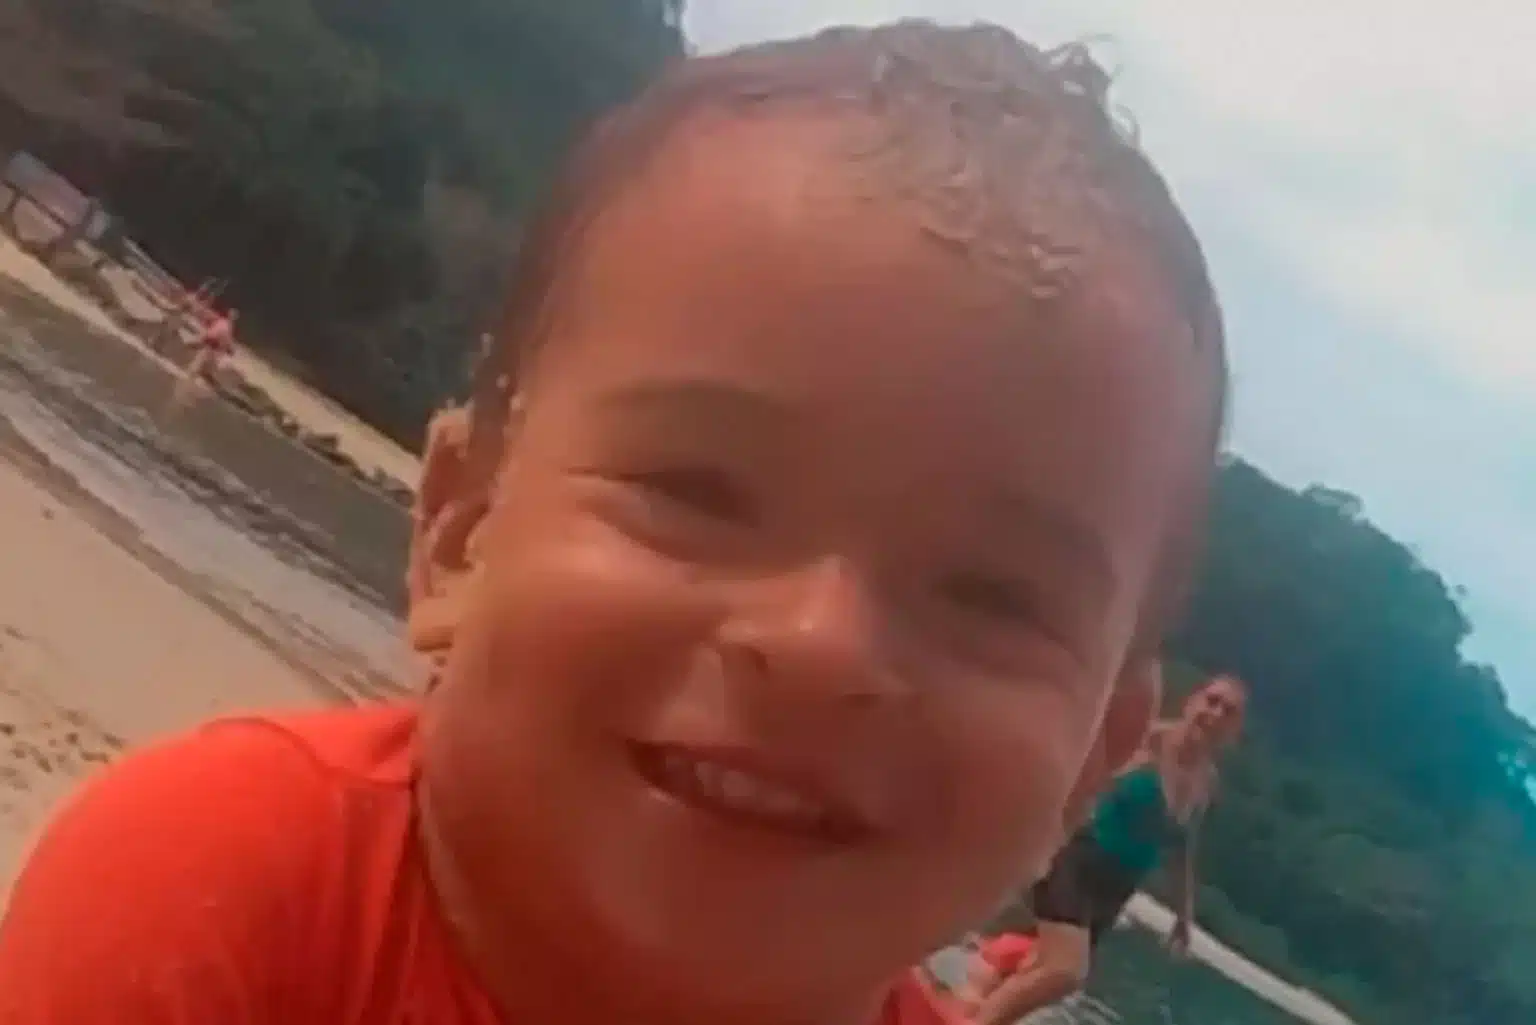 Criança De 2 Anos Morre Afogada Em Piscina Em Paulo Afonso, Bahia